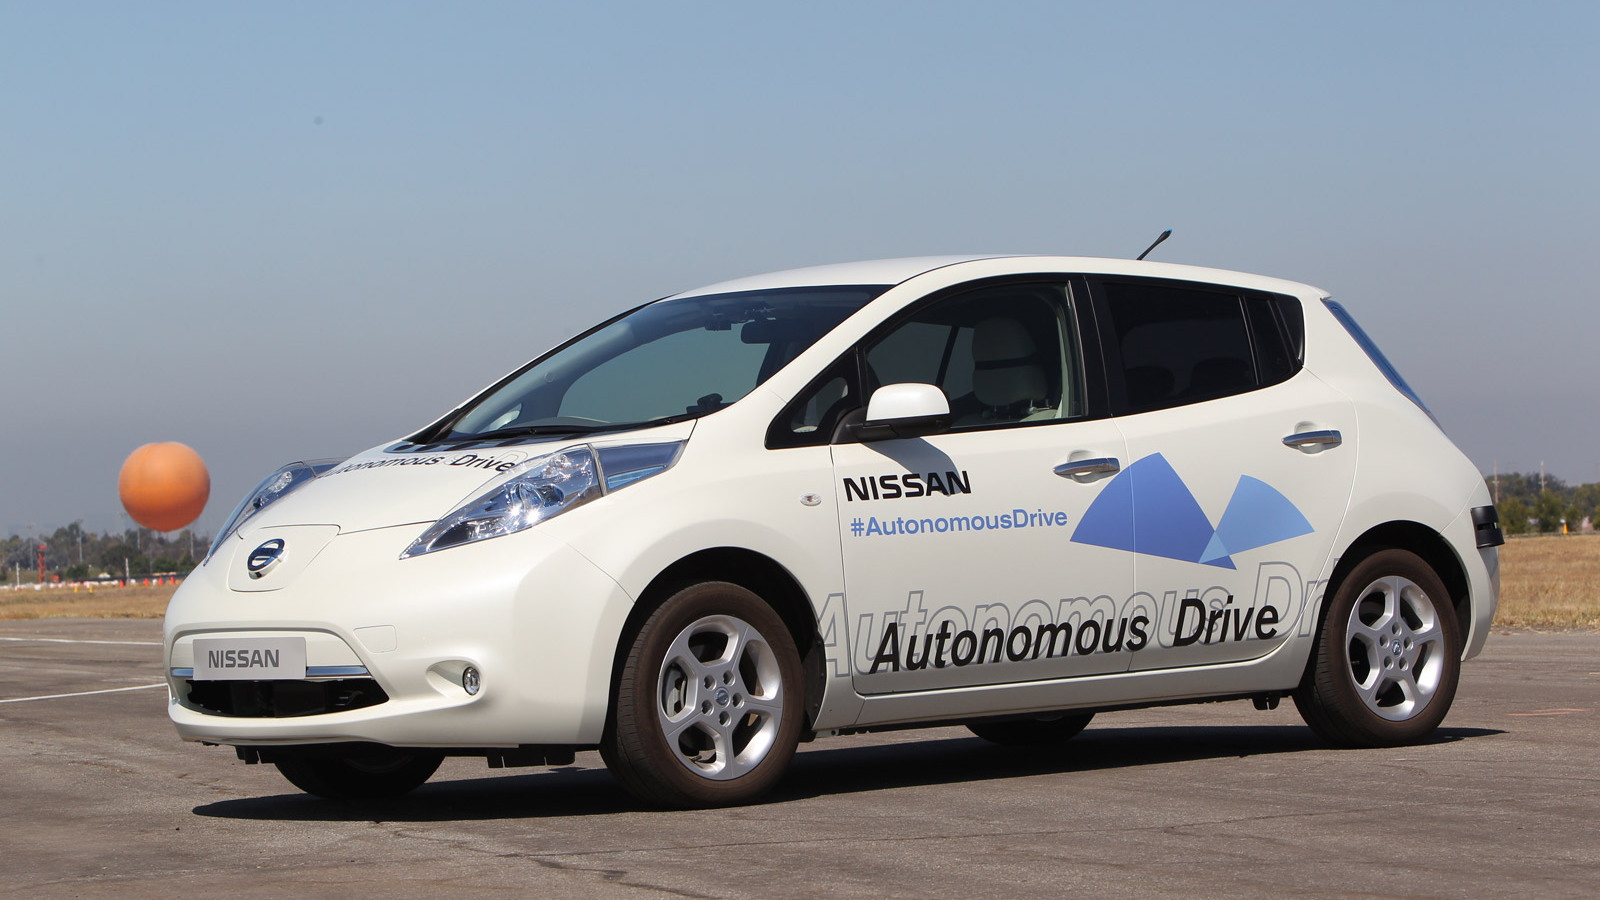 Nissan Leaf autonomous car prototype